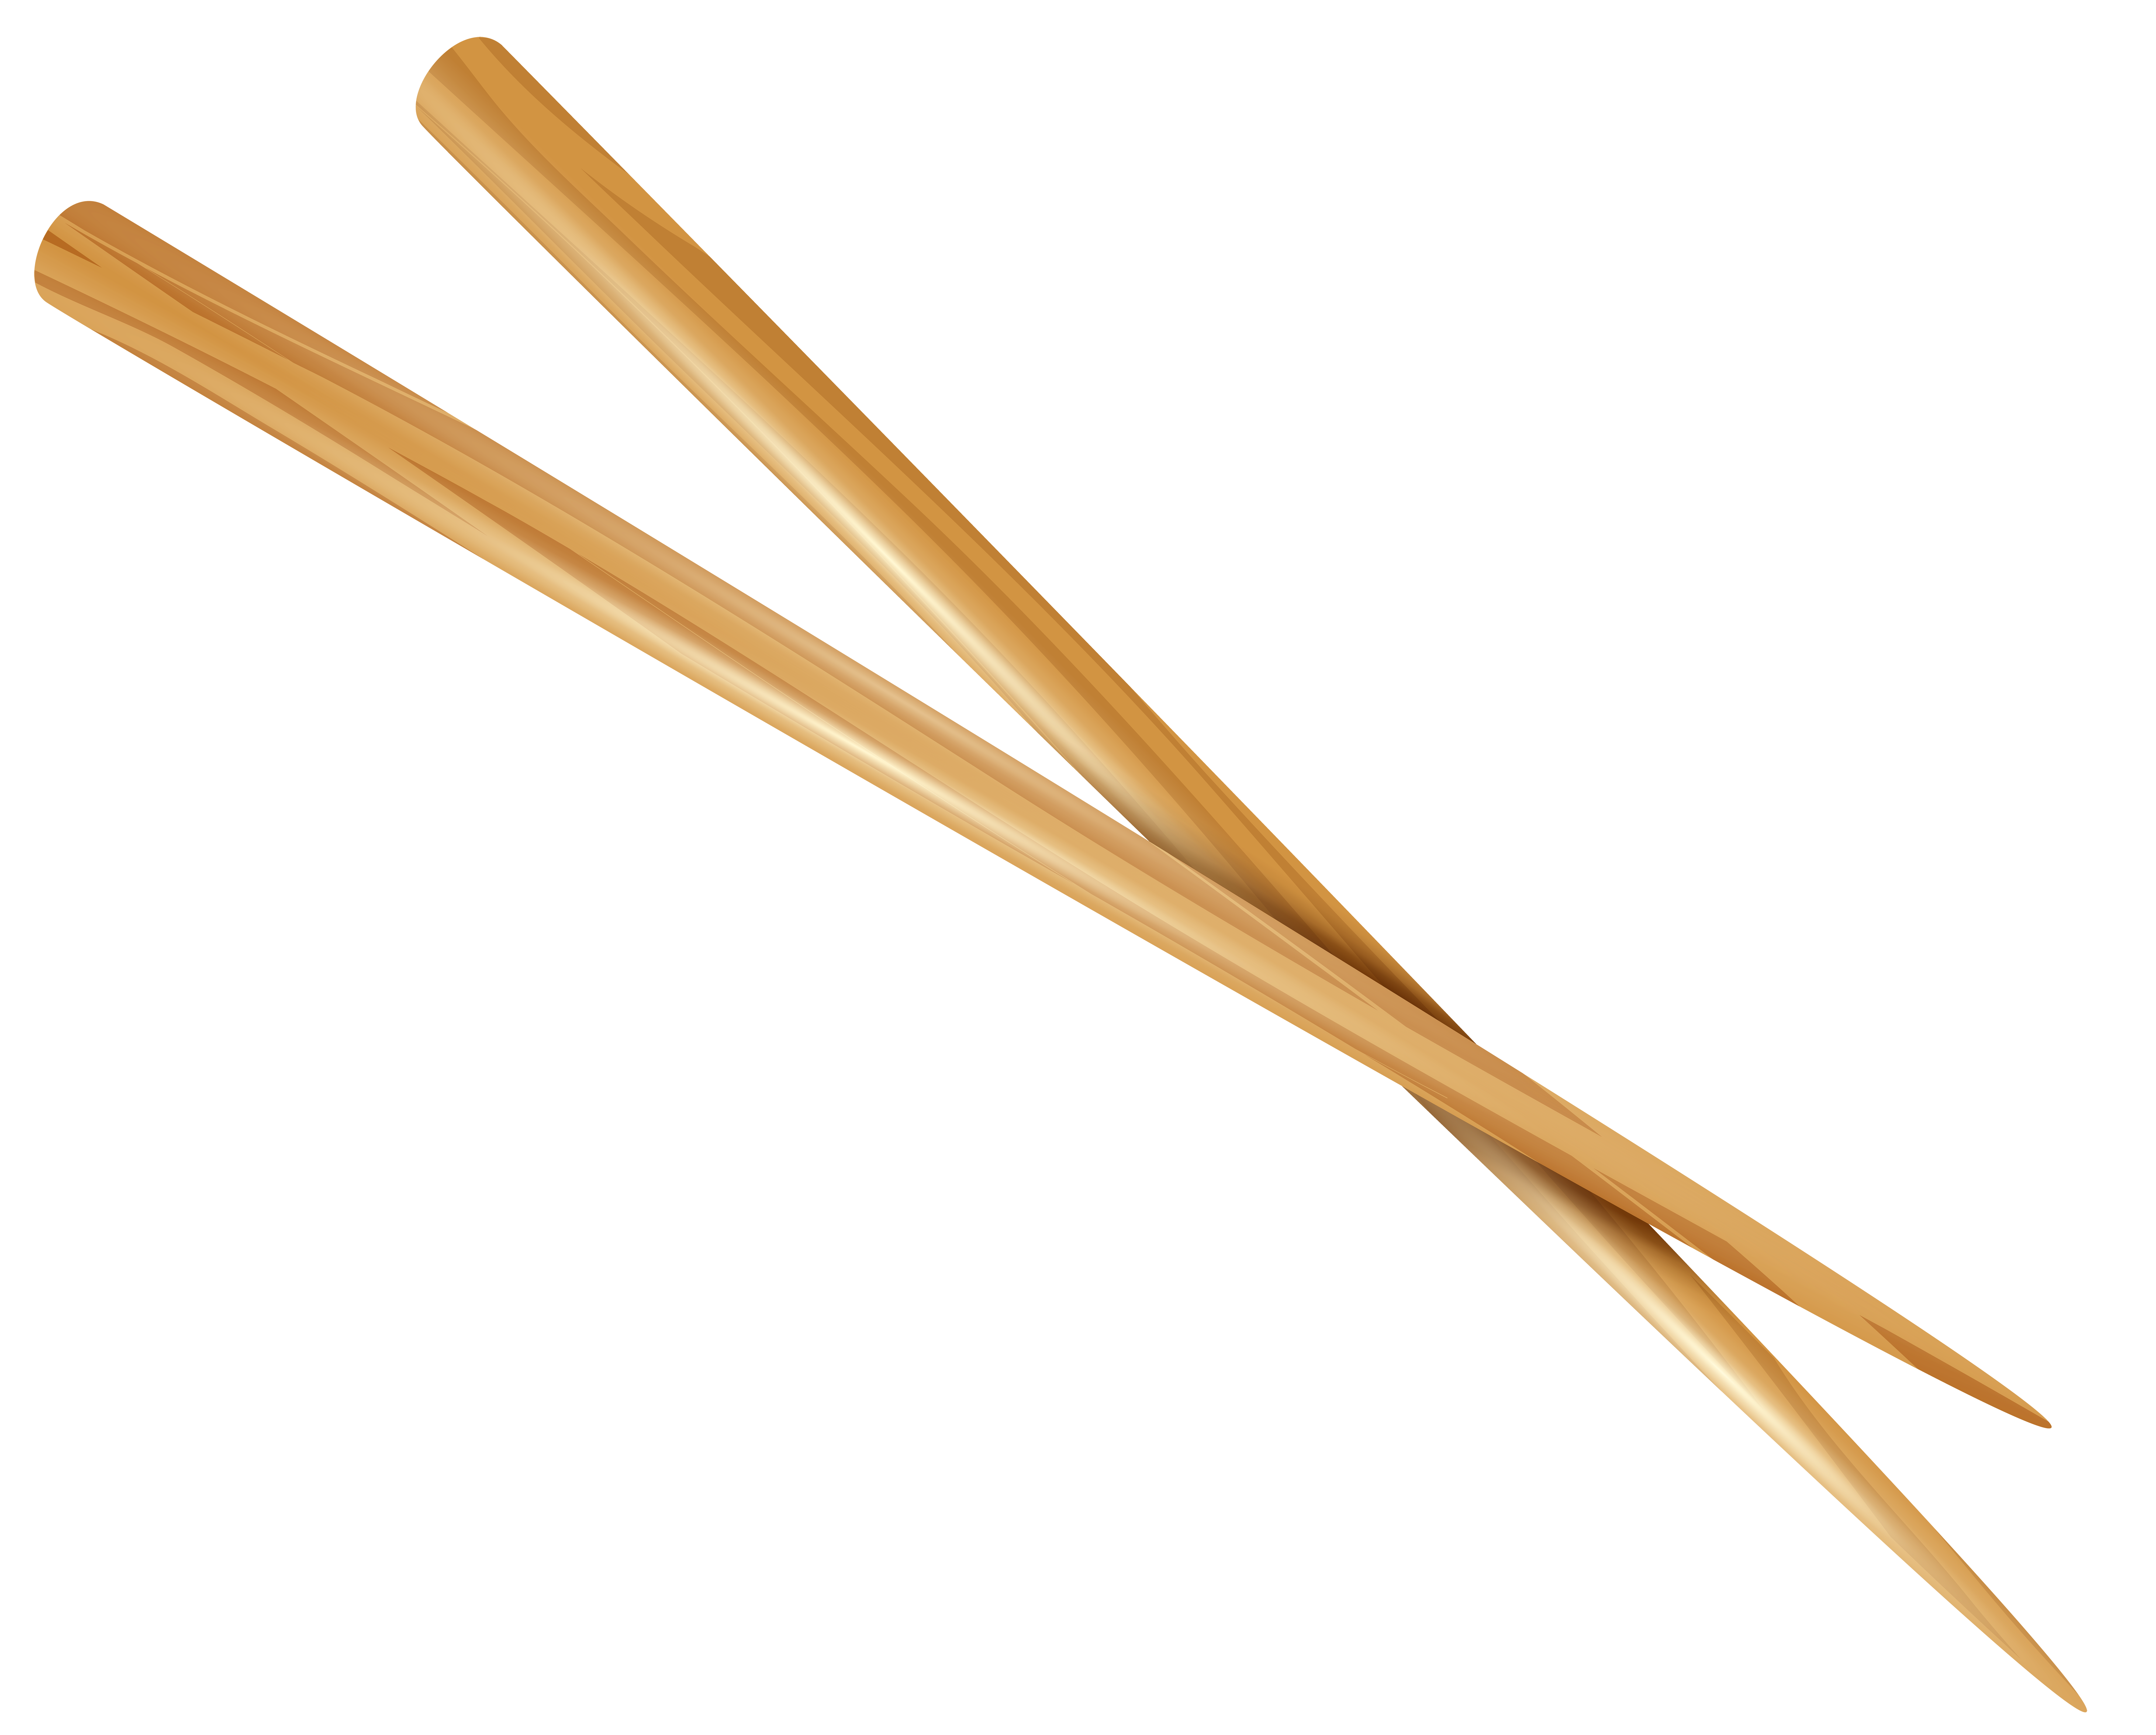 chopsticks clipart